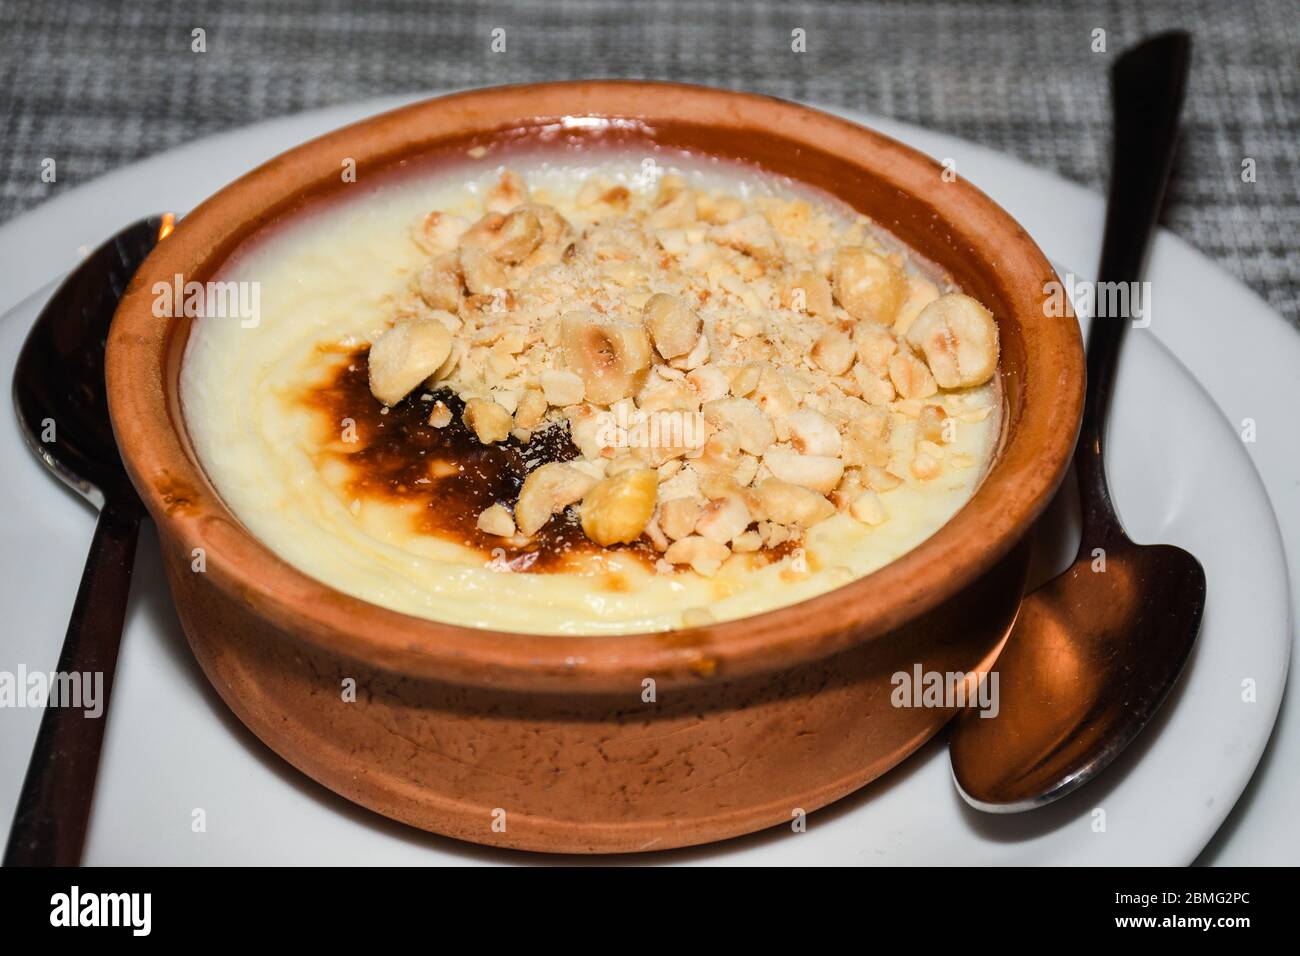 Fırın Sütlaç, Türkischer Gebackener Reispudding. Reis Pudding ist ein  Gericht aus Reis mit Wasser oder Milch und anderen Zutaten wie Zimt und ra  gemischt Stockfotografie - Alamy